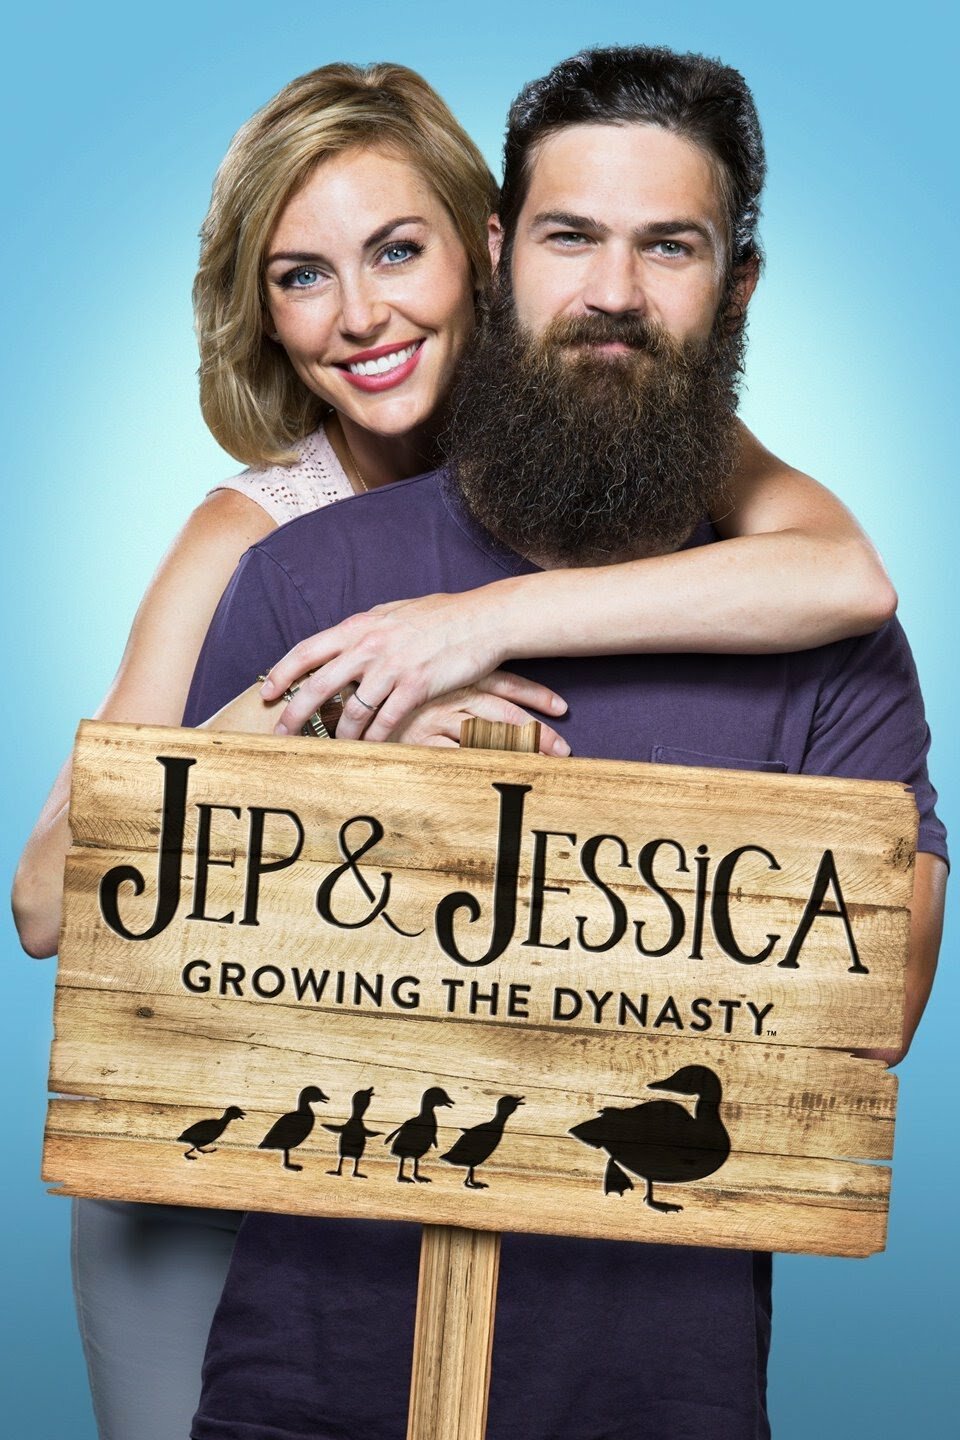 Jep & Jessica: Growing the Dynasty ne zaman